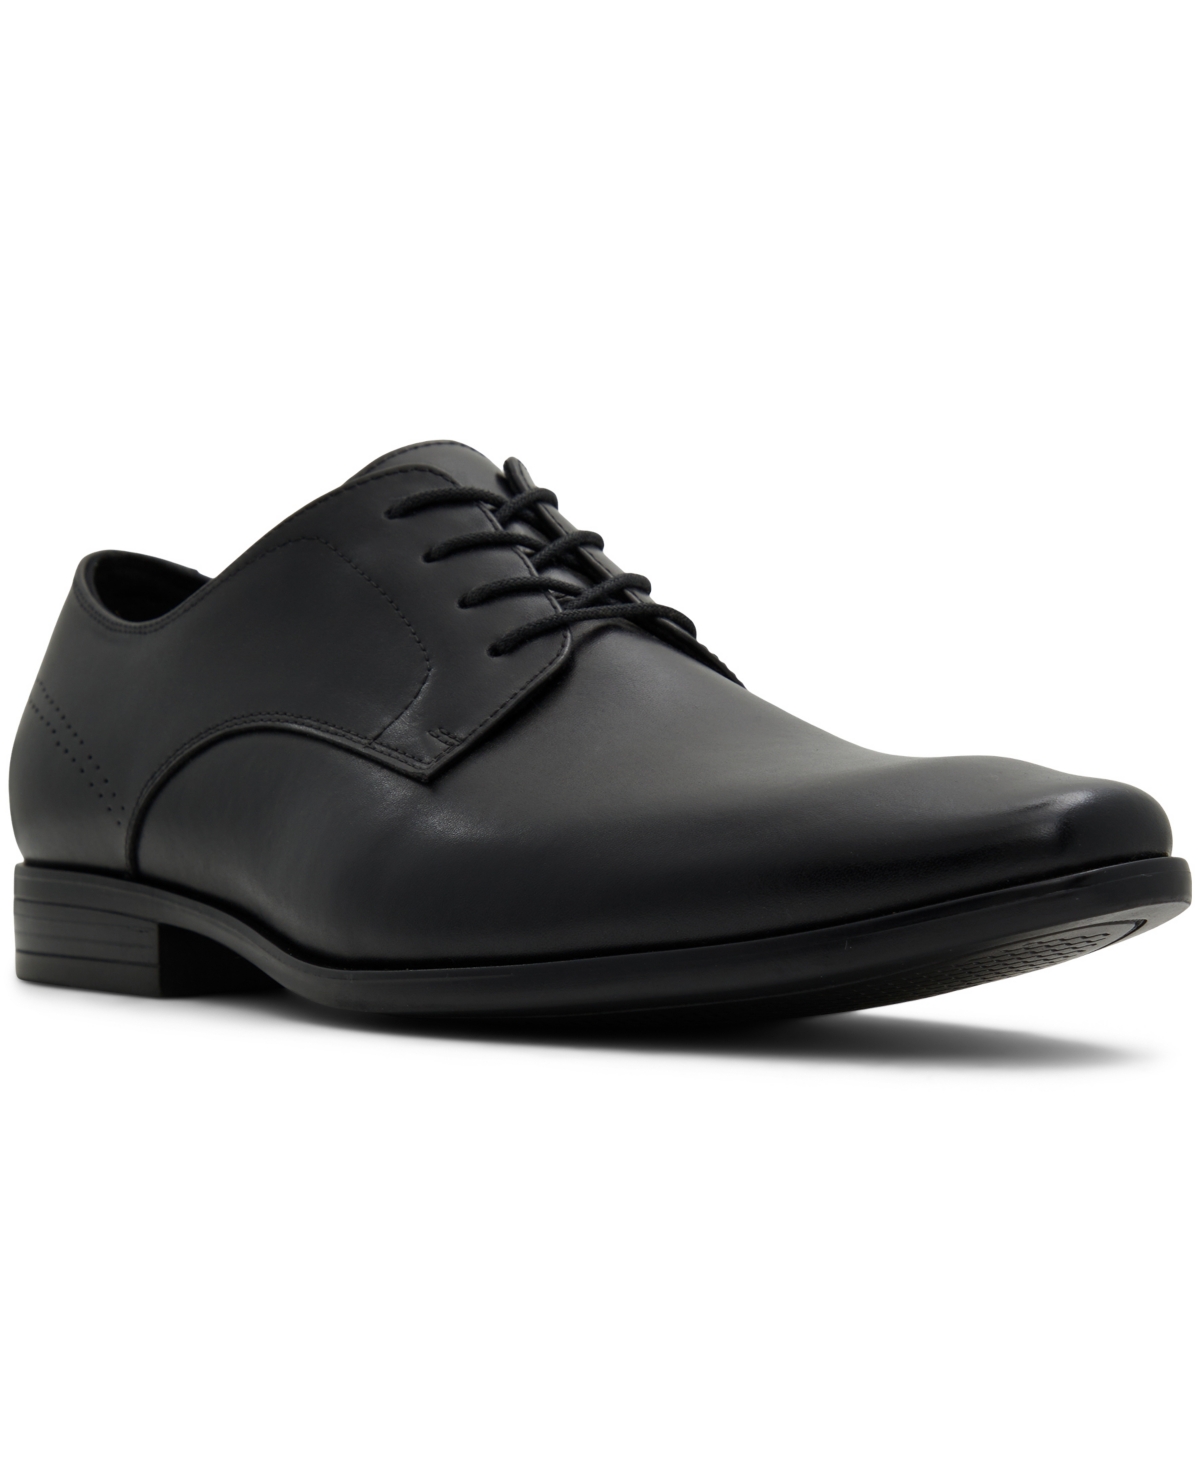 Men's Nelsen Lace-Up Shoes - Black